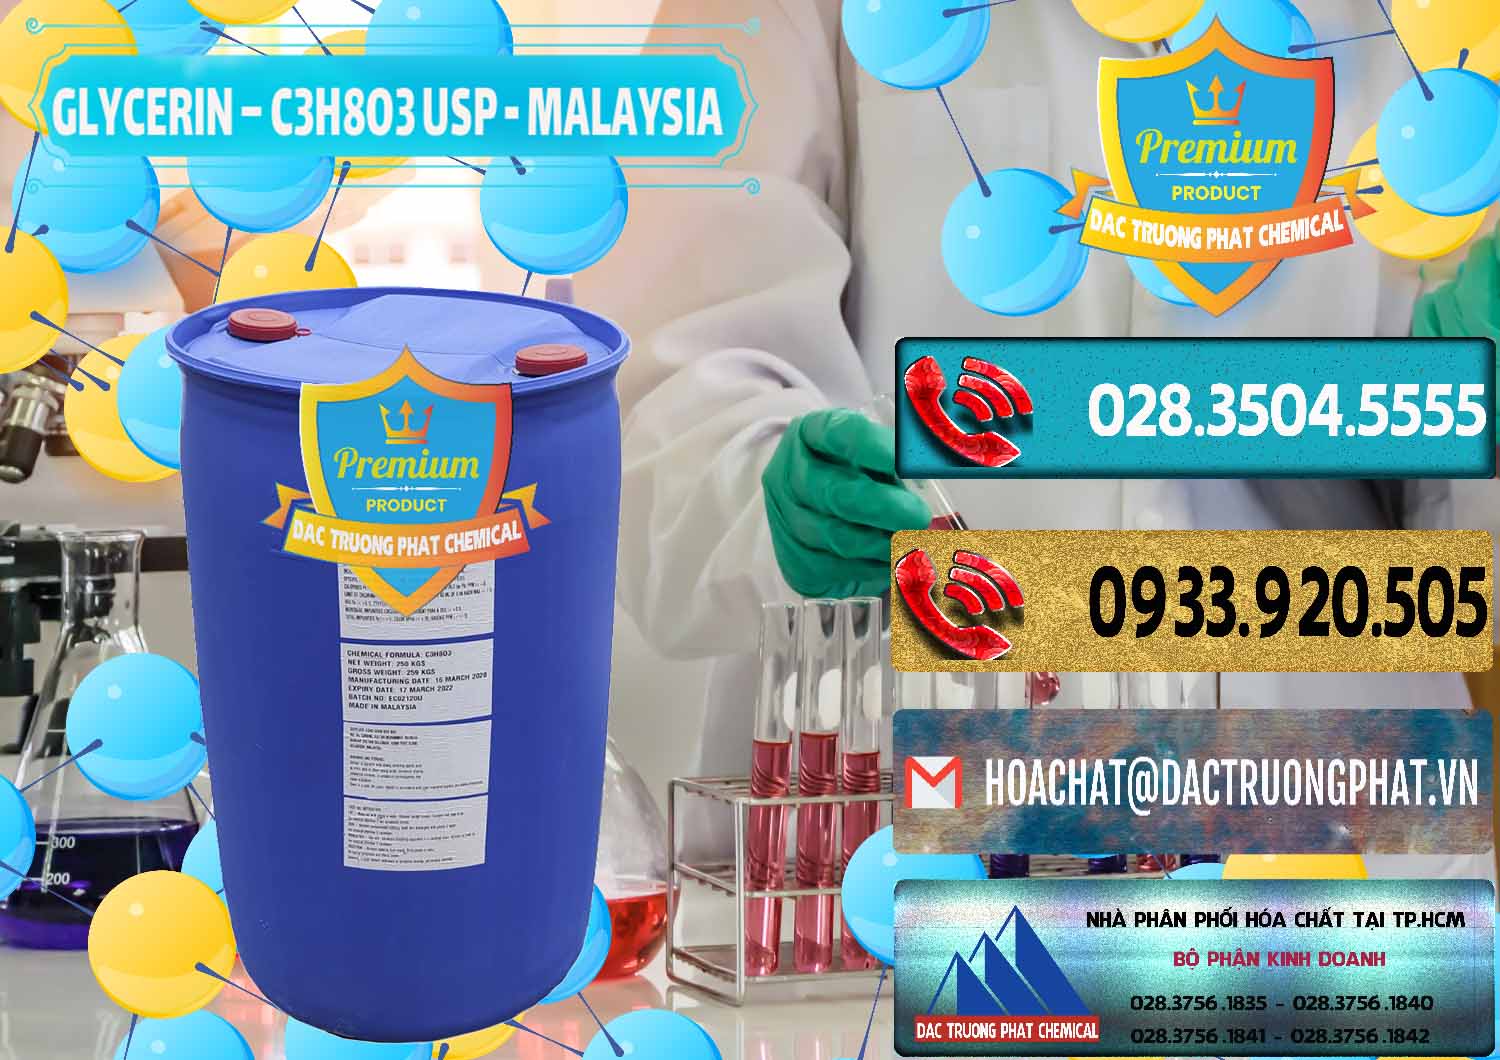 Chuyên bán ( cung cấp ) Glycerin – C3H8O3 USP Malaysia - 0233 - Cty bán _ cung cấp hóa chất tại TP.HCM - hoachatdetnhuom.com